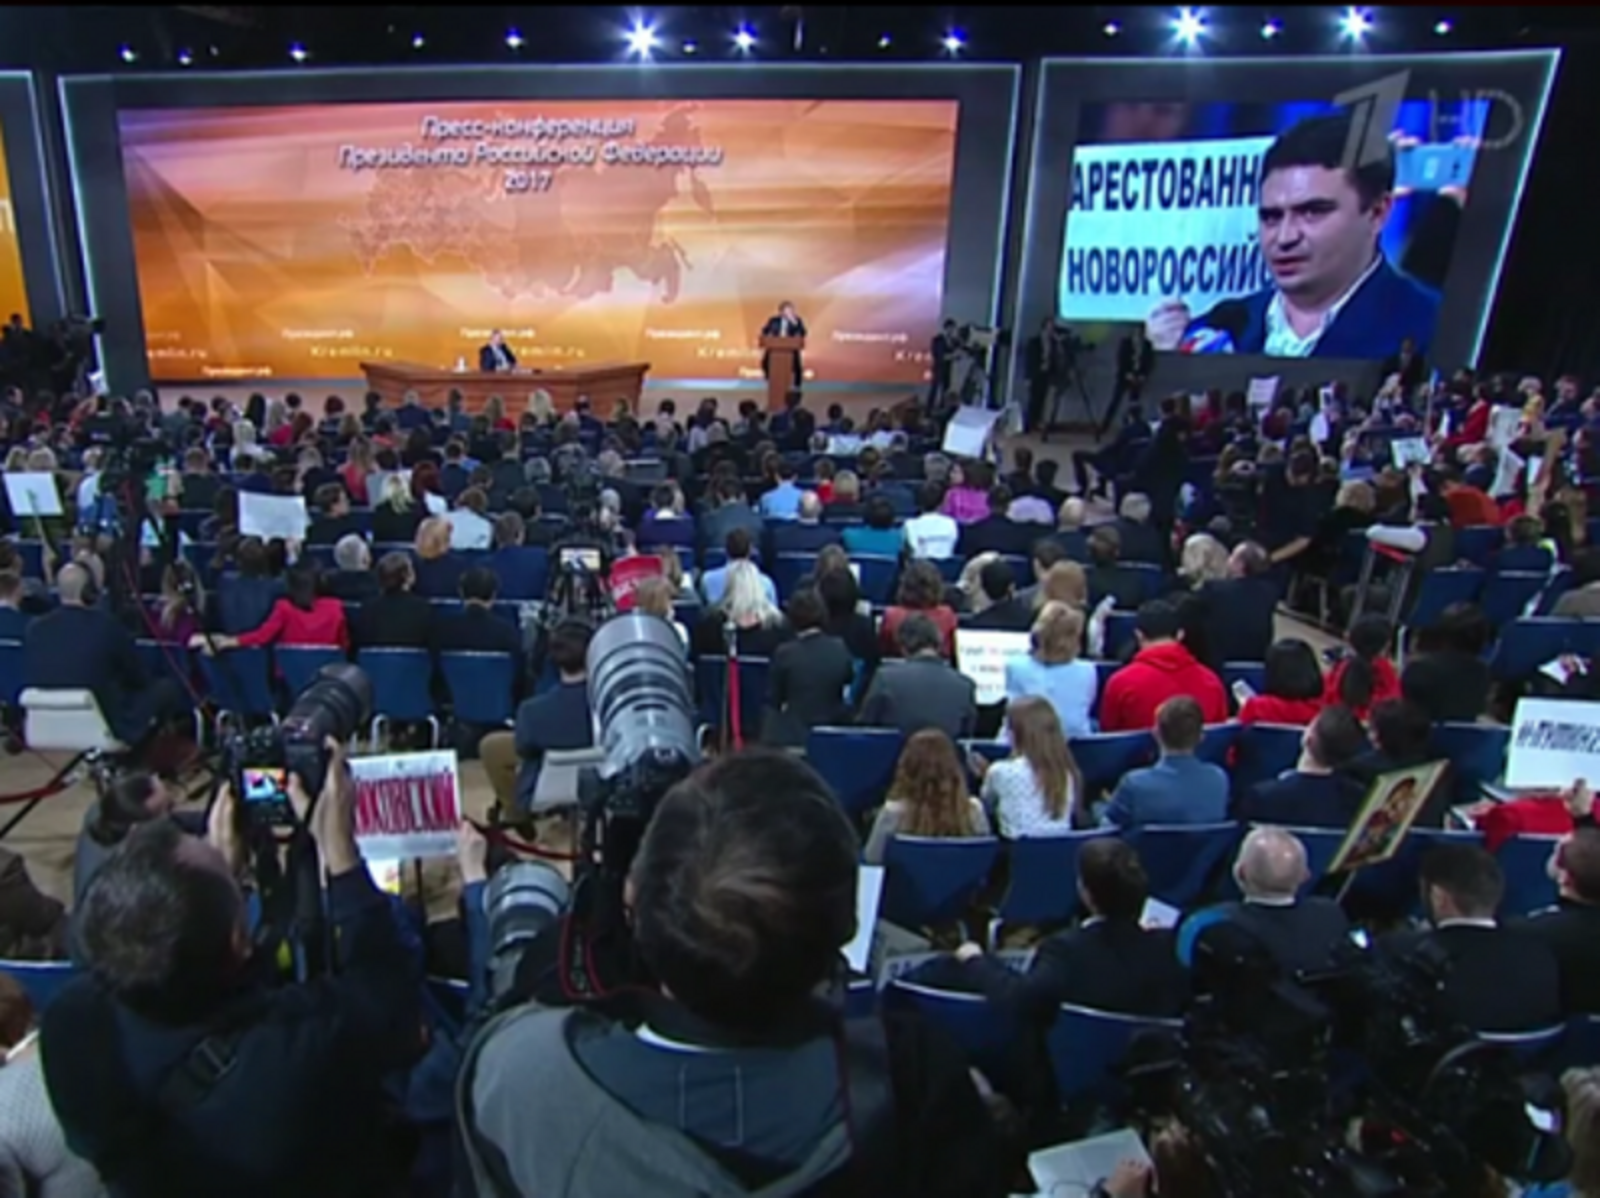 Скрин с видеотрансляции пресс-конференции В.В. Путина.